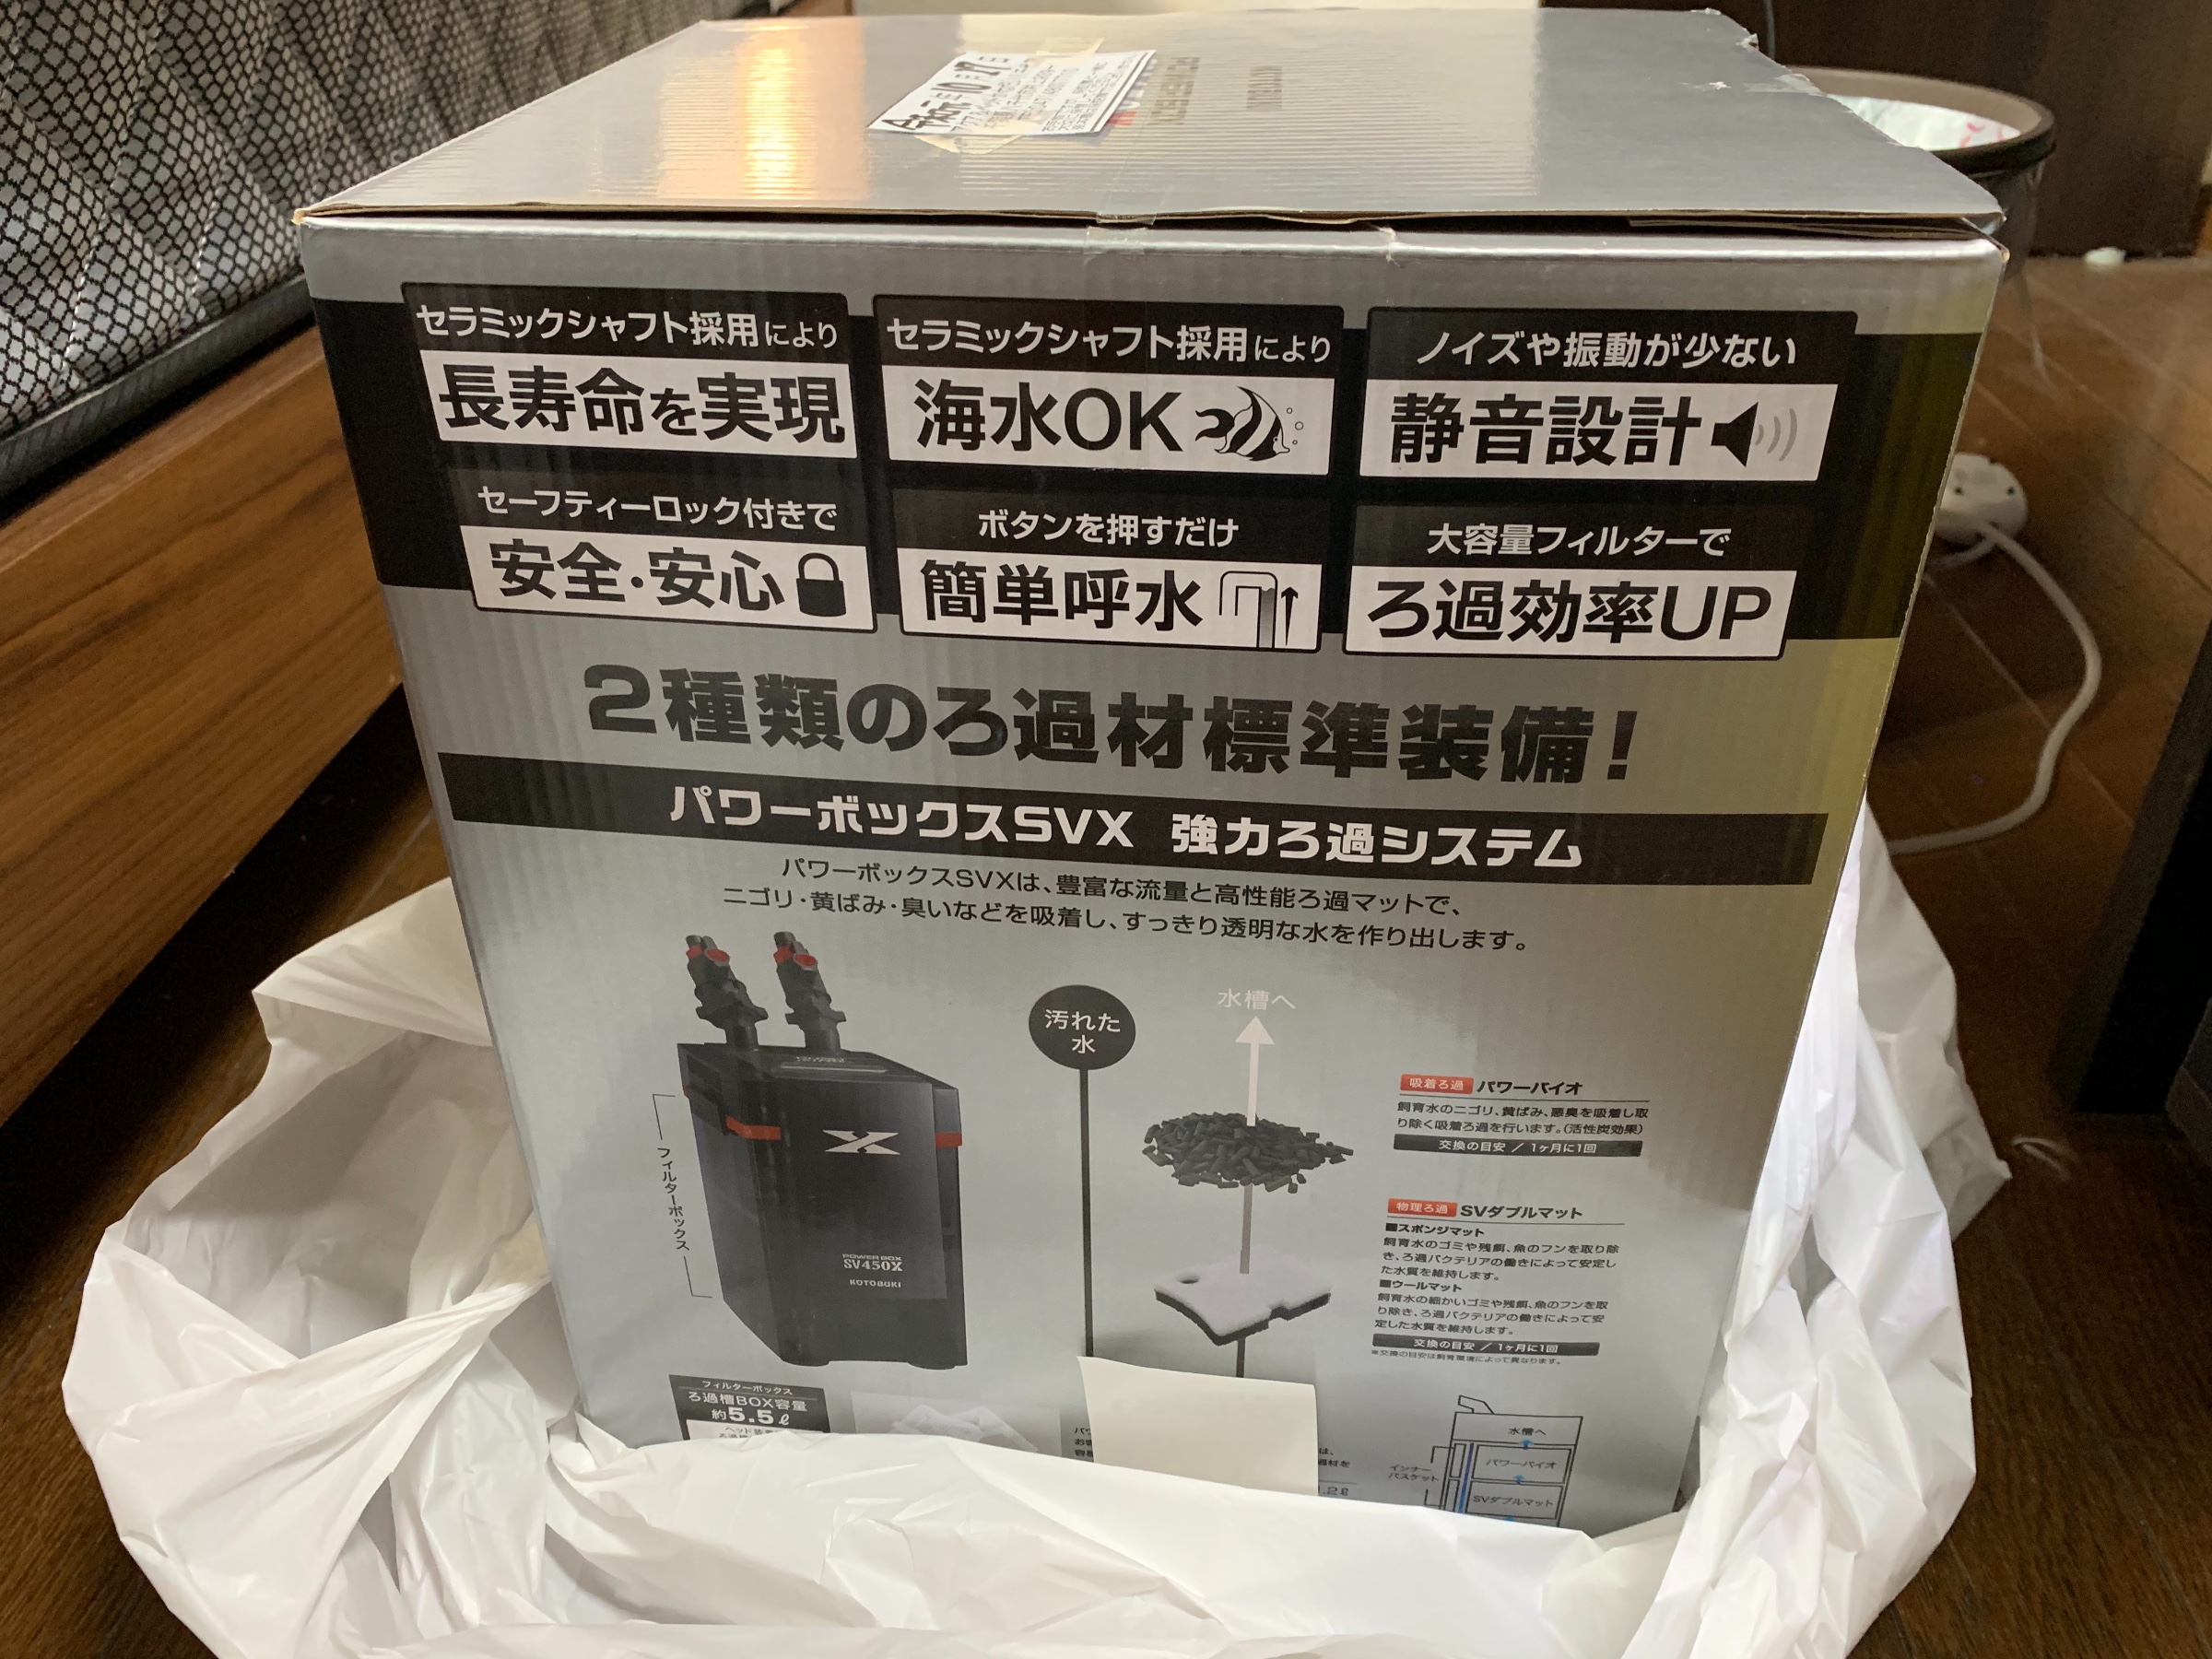 日本産】 コトブキ パワーボックス SV450X 水槽 外部式フィルター fucoa.cl